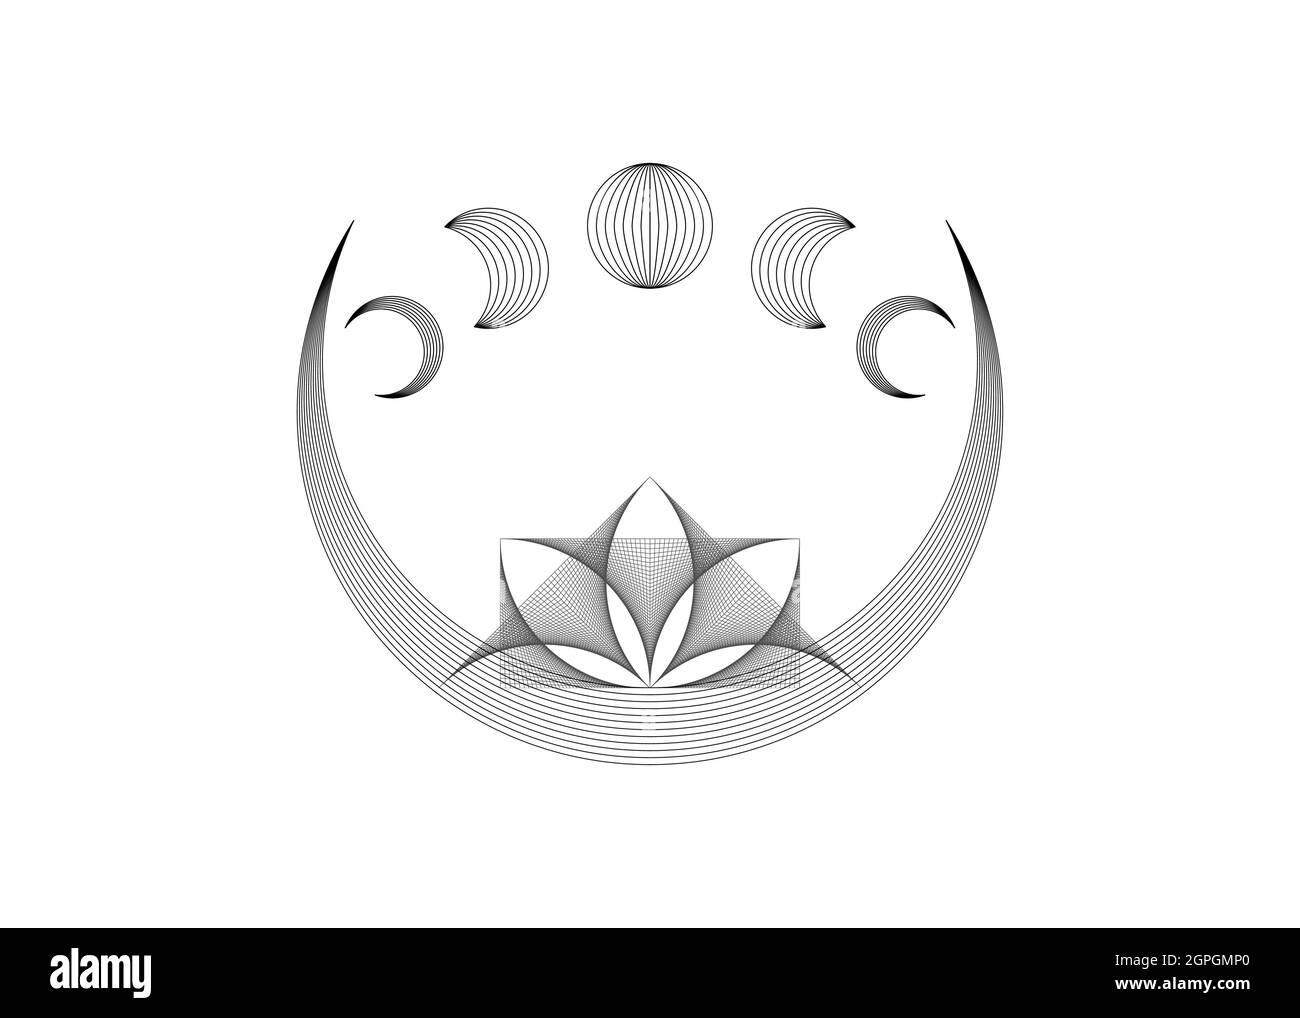 Lune du croissant de Lotus, phases de la fleur et de la lune du Lotus mystique, géométrie sacrée. Chaîne ligne noire filaire géométrique. Motif de logo d'art de fil vecteur isol Illustration de Vecteur